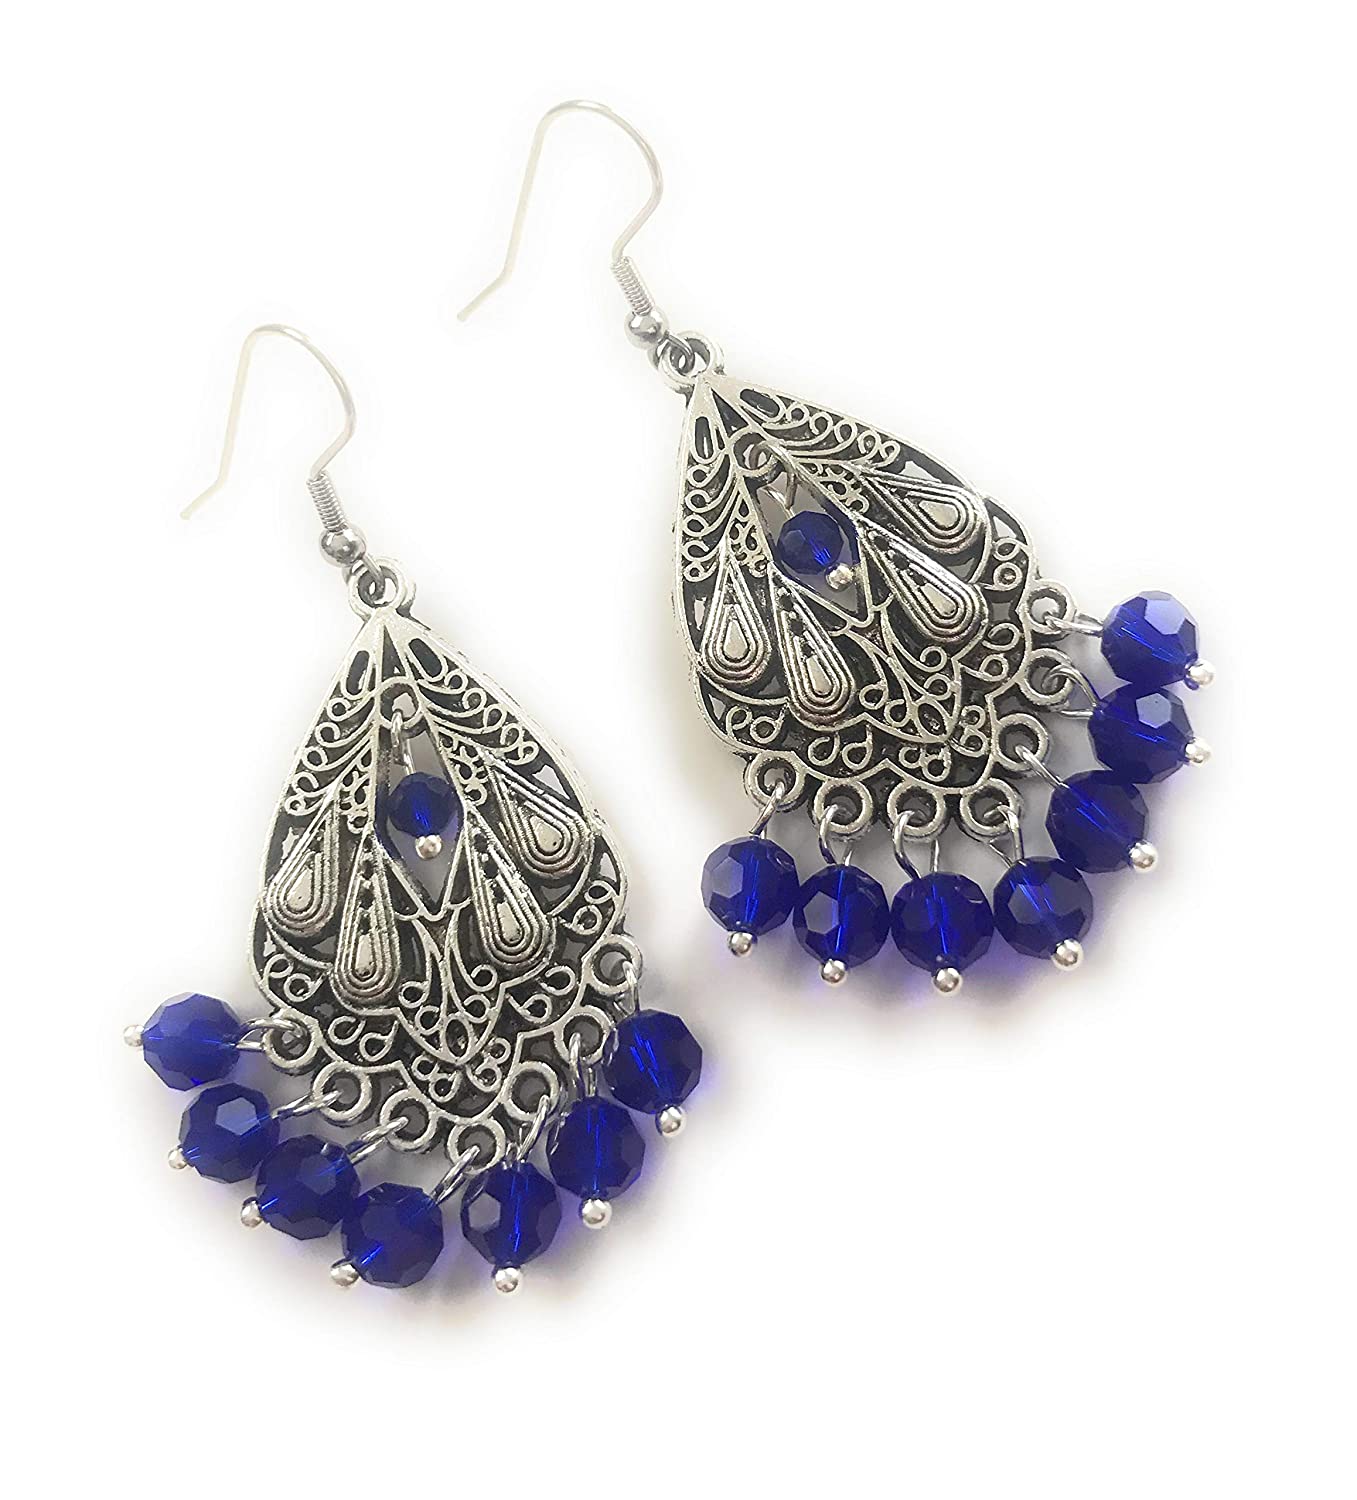 Cobalt Blue Beaded Chandelier Earrings from Scott D Jewelry Designs